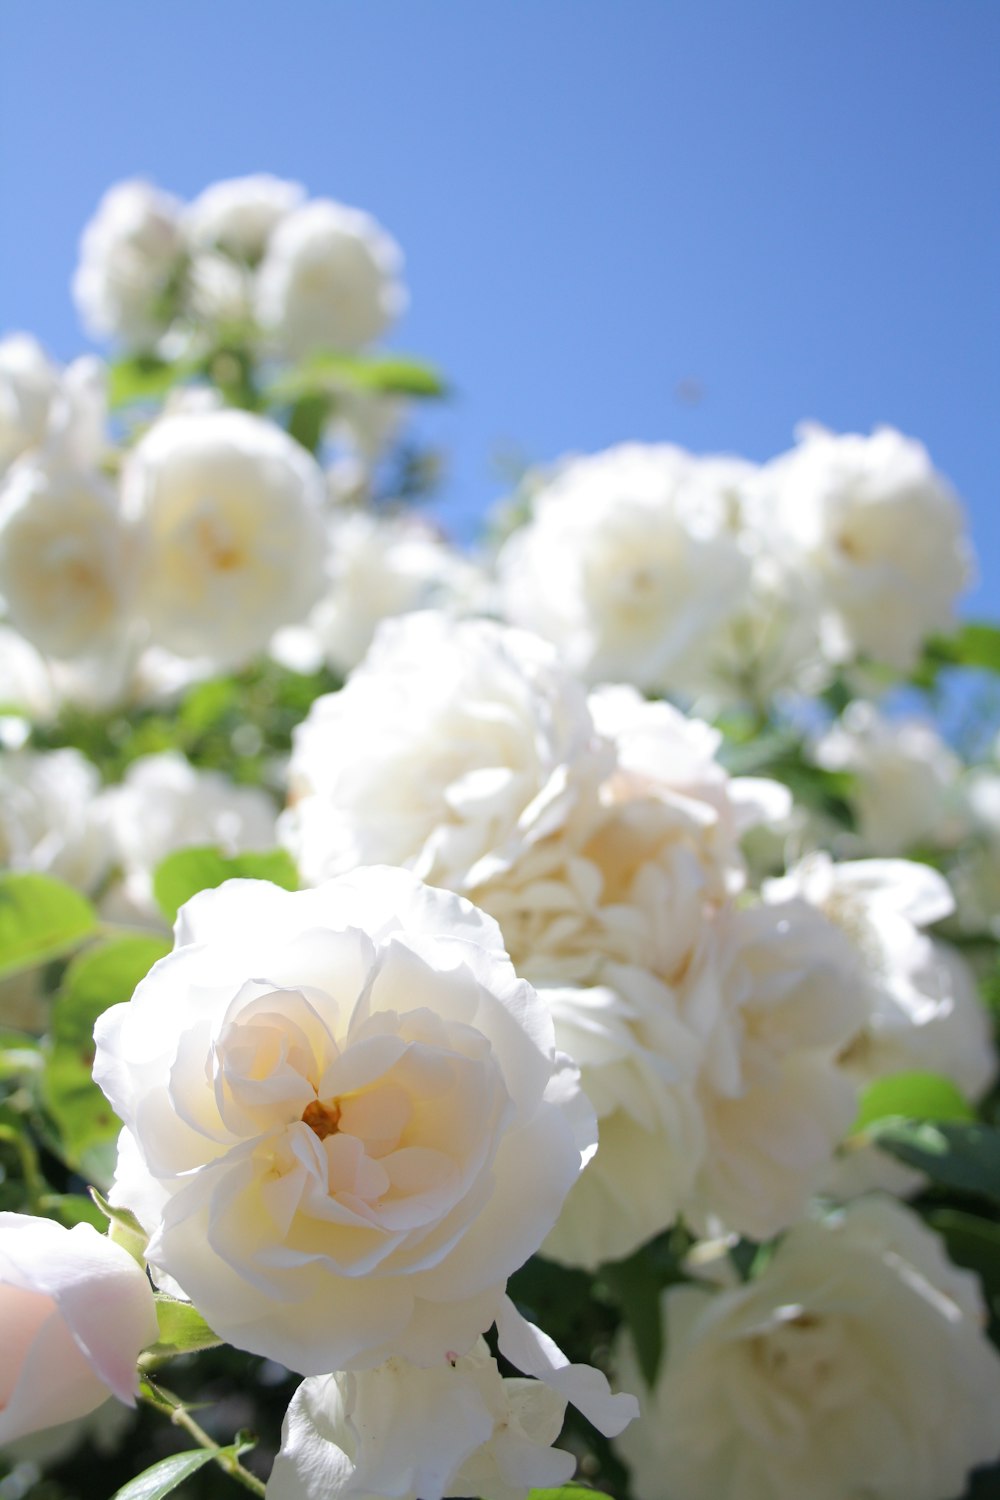 fotografia em close-up da flor rosa branca